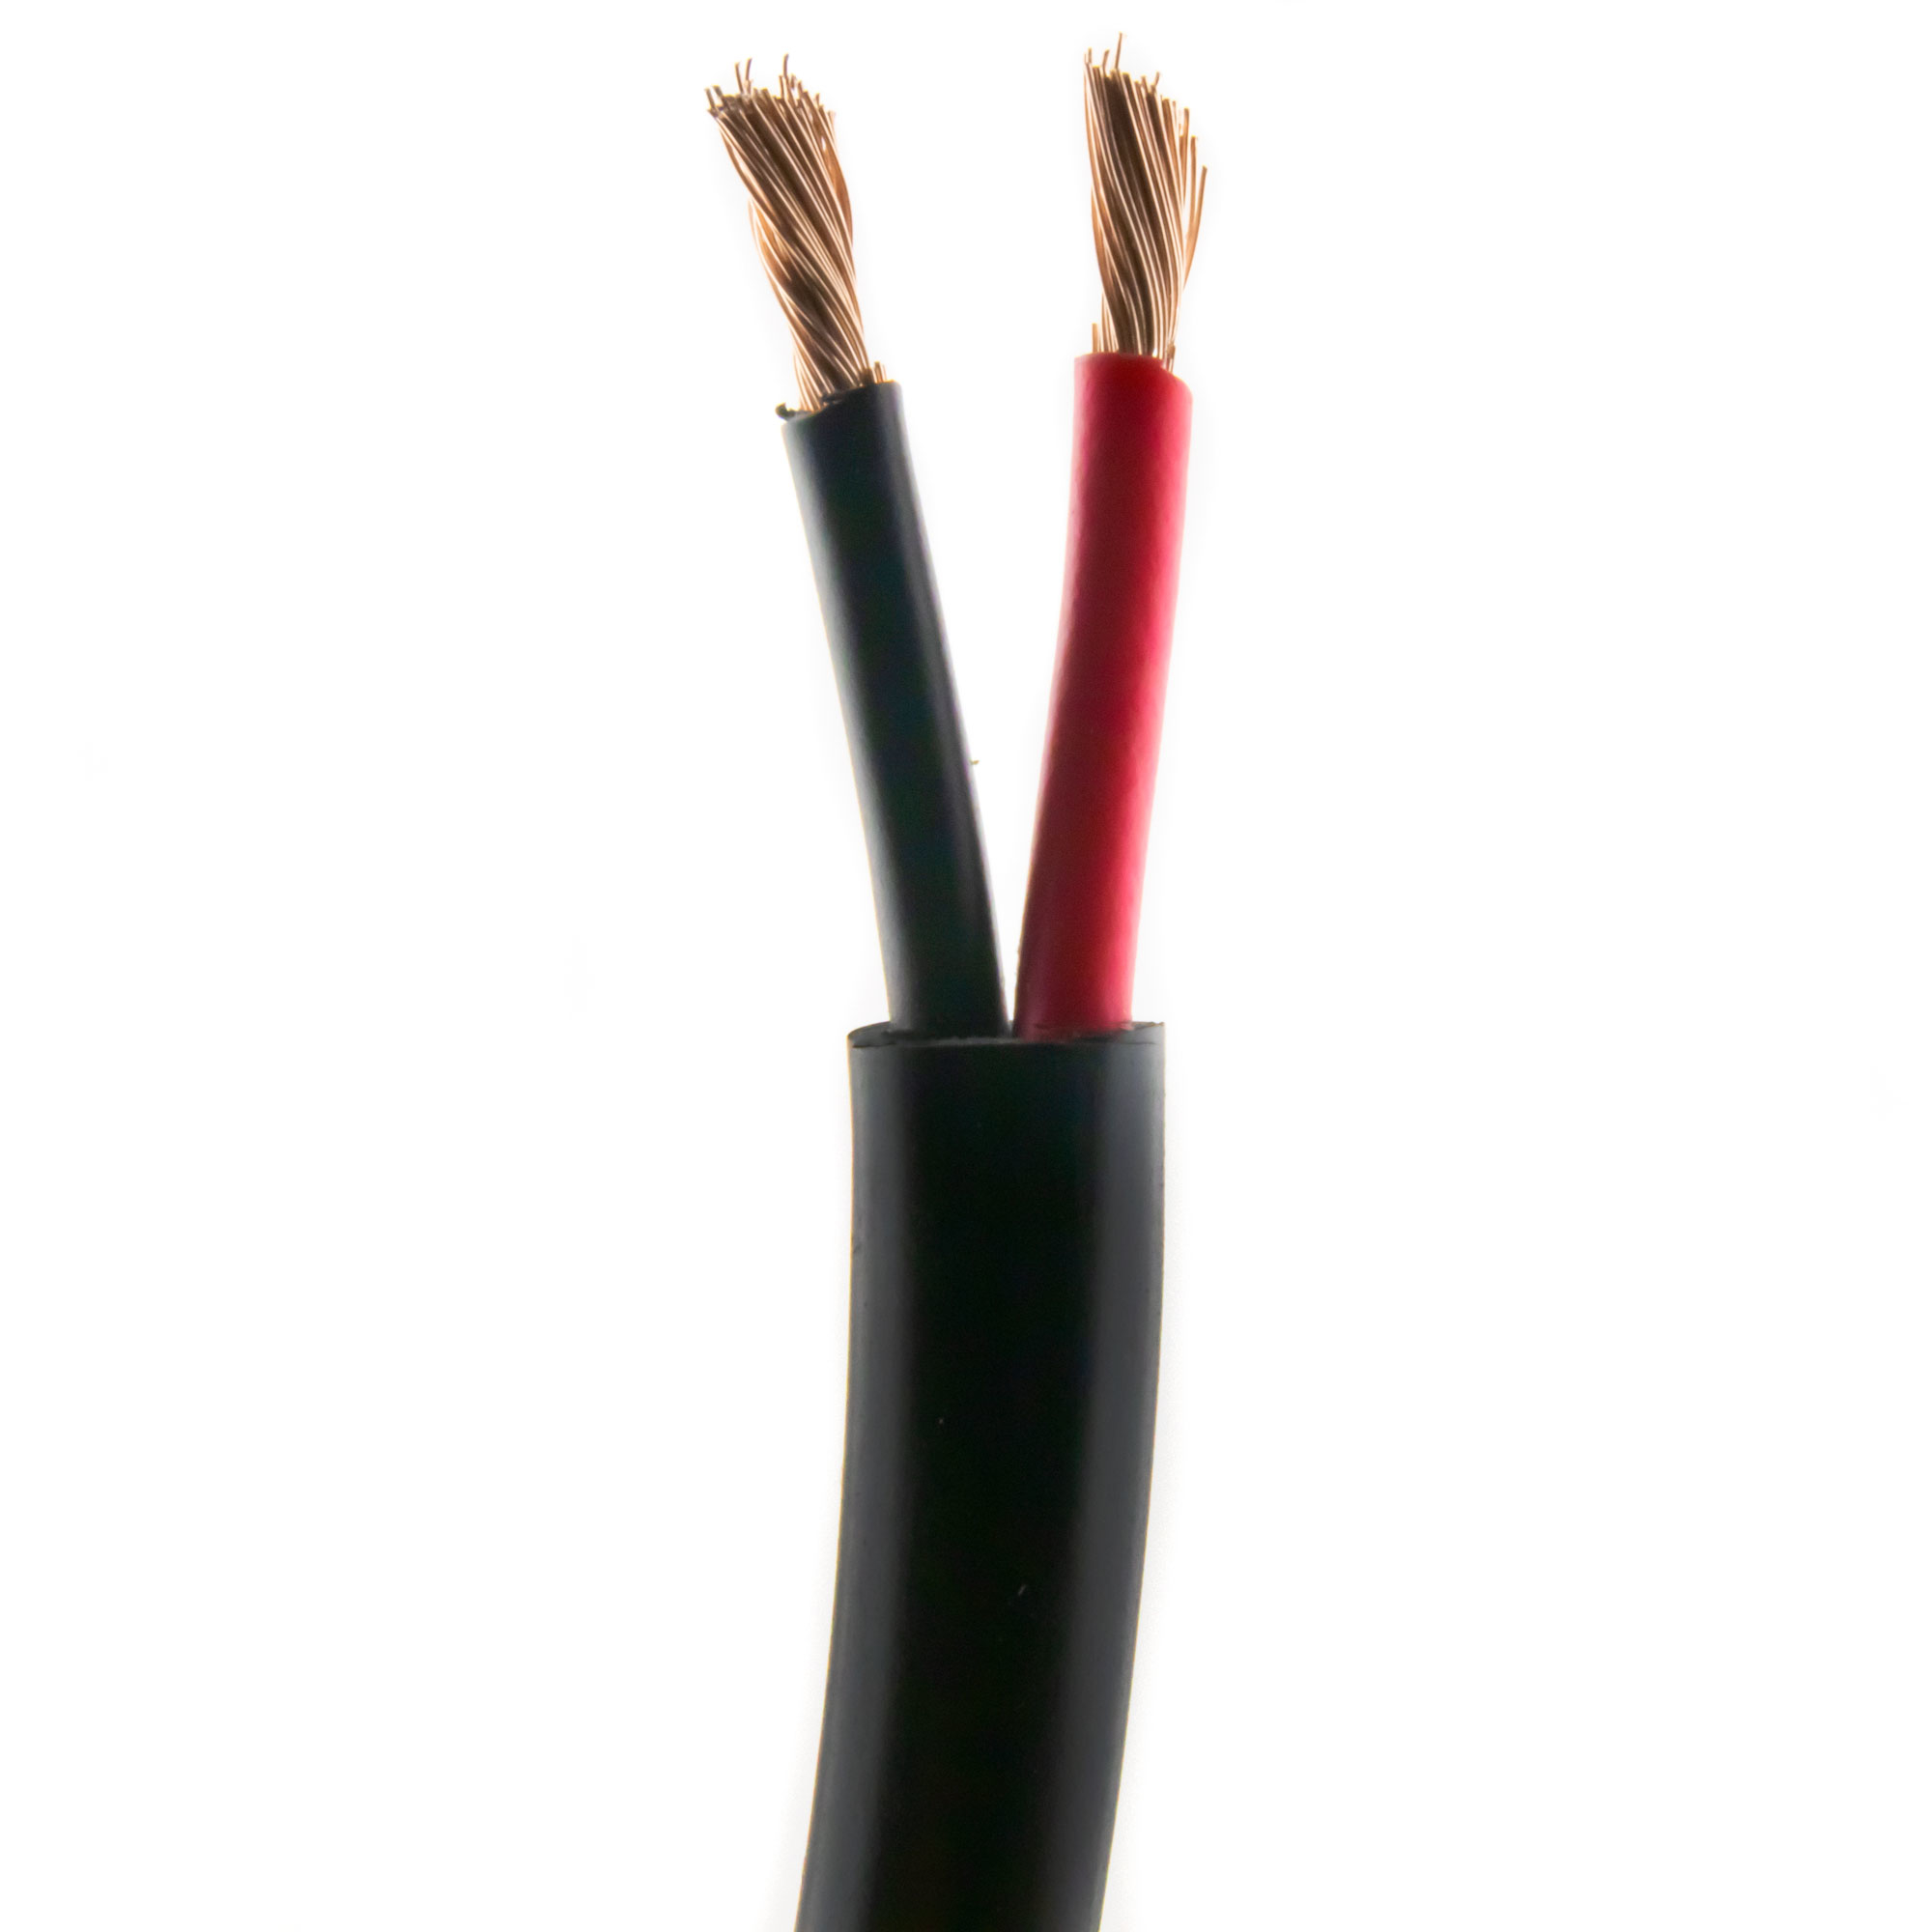 Loudspeaker cable ROUND 2,50mm, CCA, 100M, black